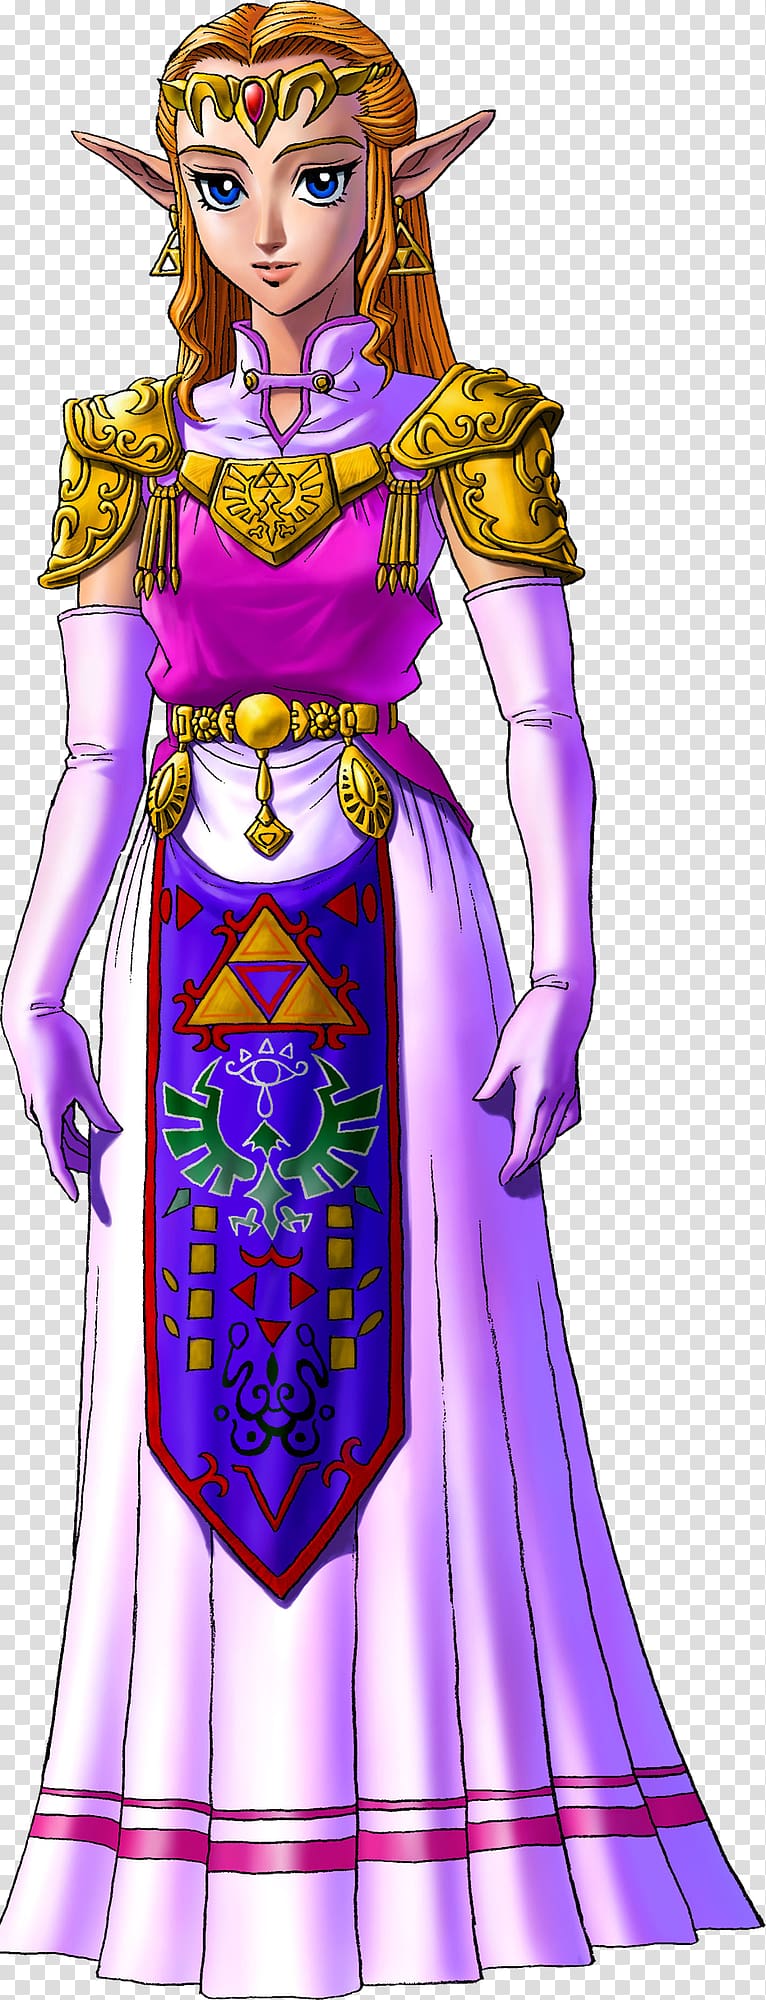 The Legend of Zelda: Ocarina of Time 3D The Legend of Zelda: Majora\'s Mask Princess Zelda Link, ganon ocarina of time transparent background PNG clipart